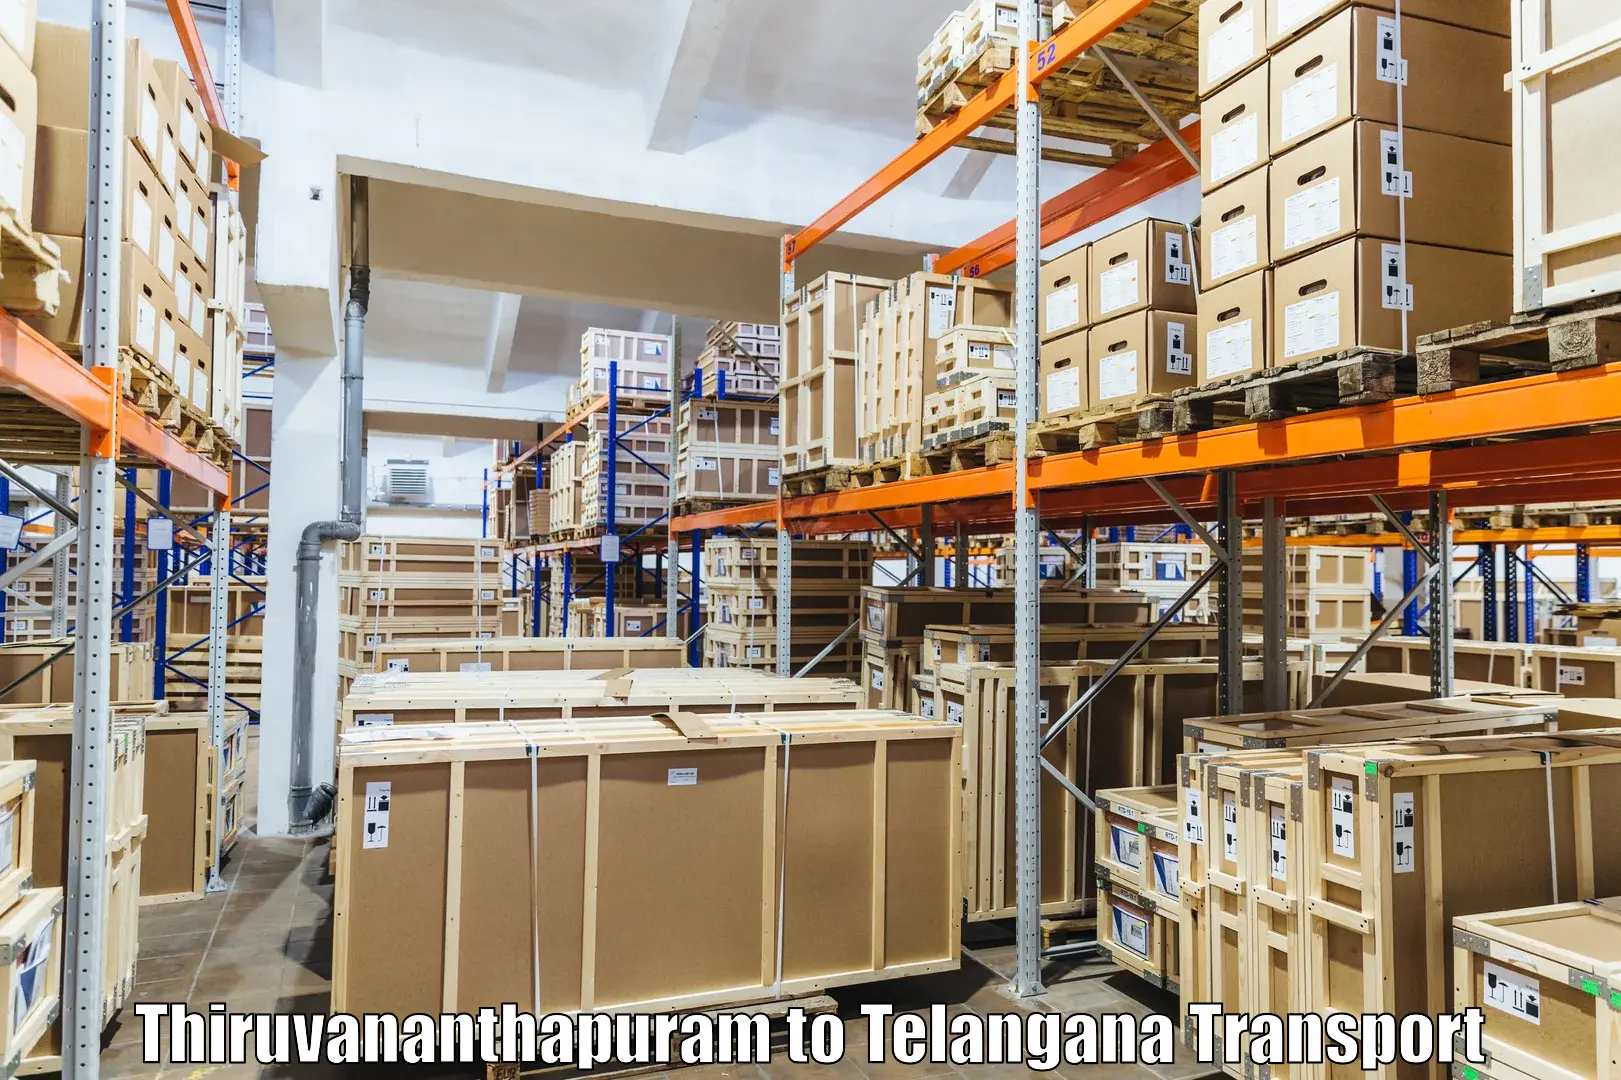 Shipping partner Thiruvananthapuram to Gangadhara